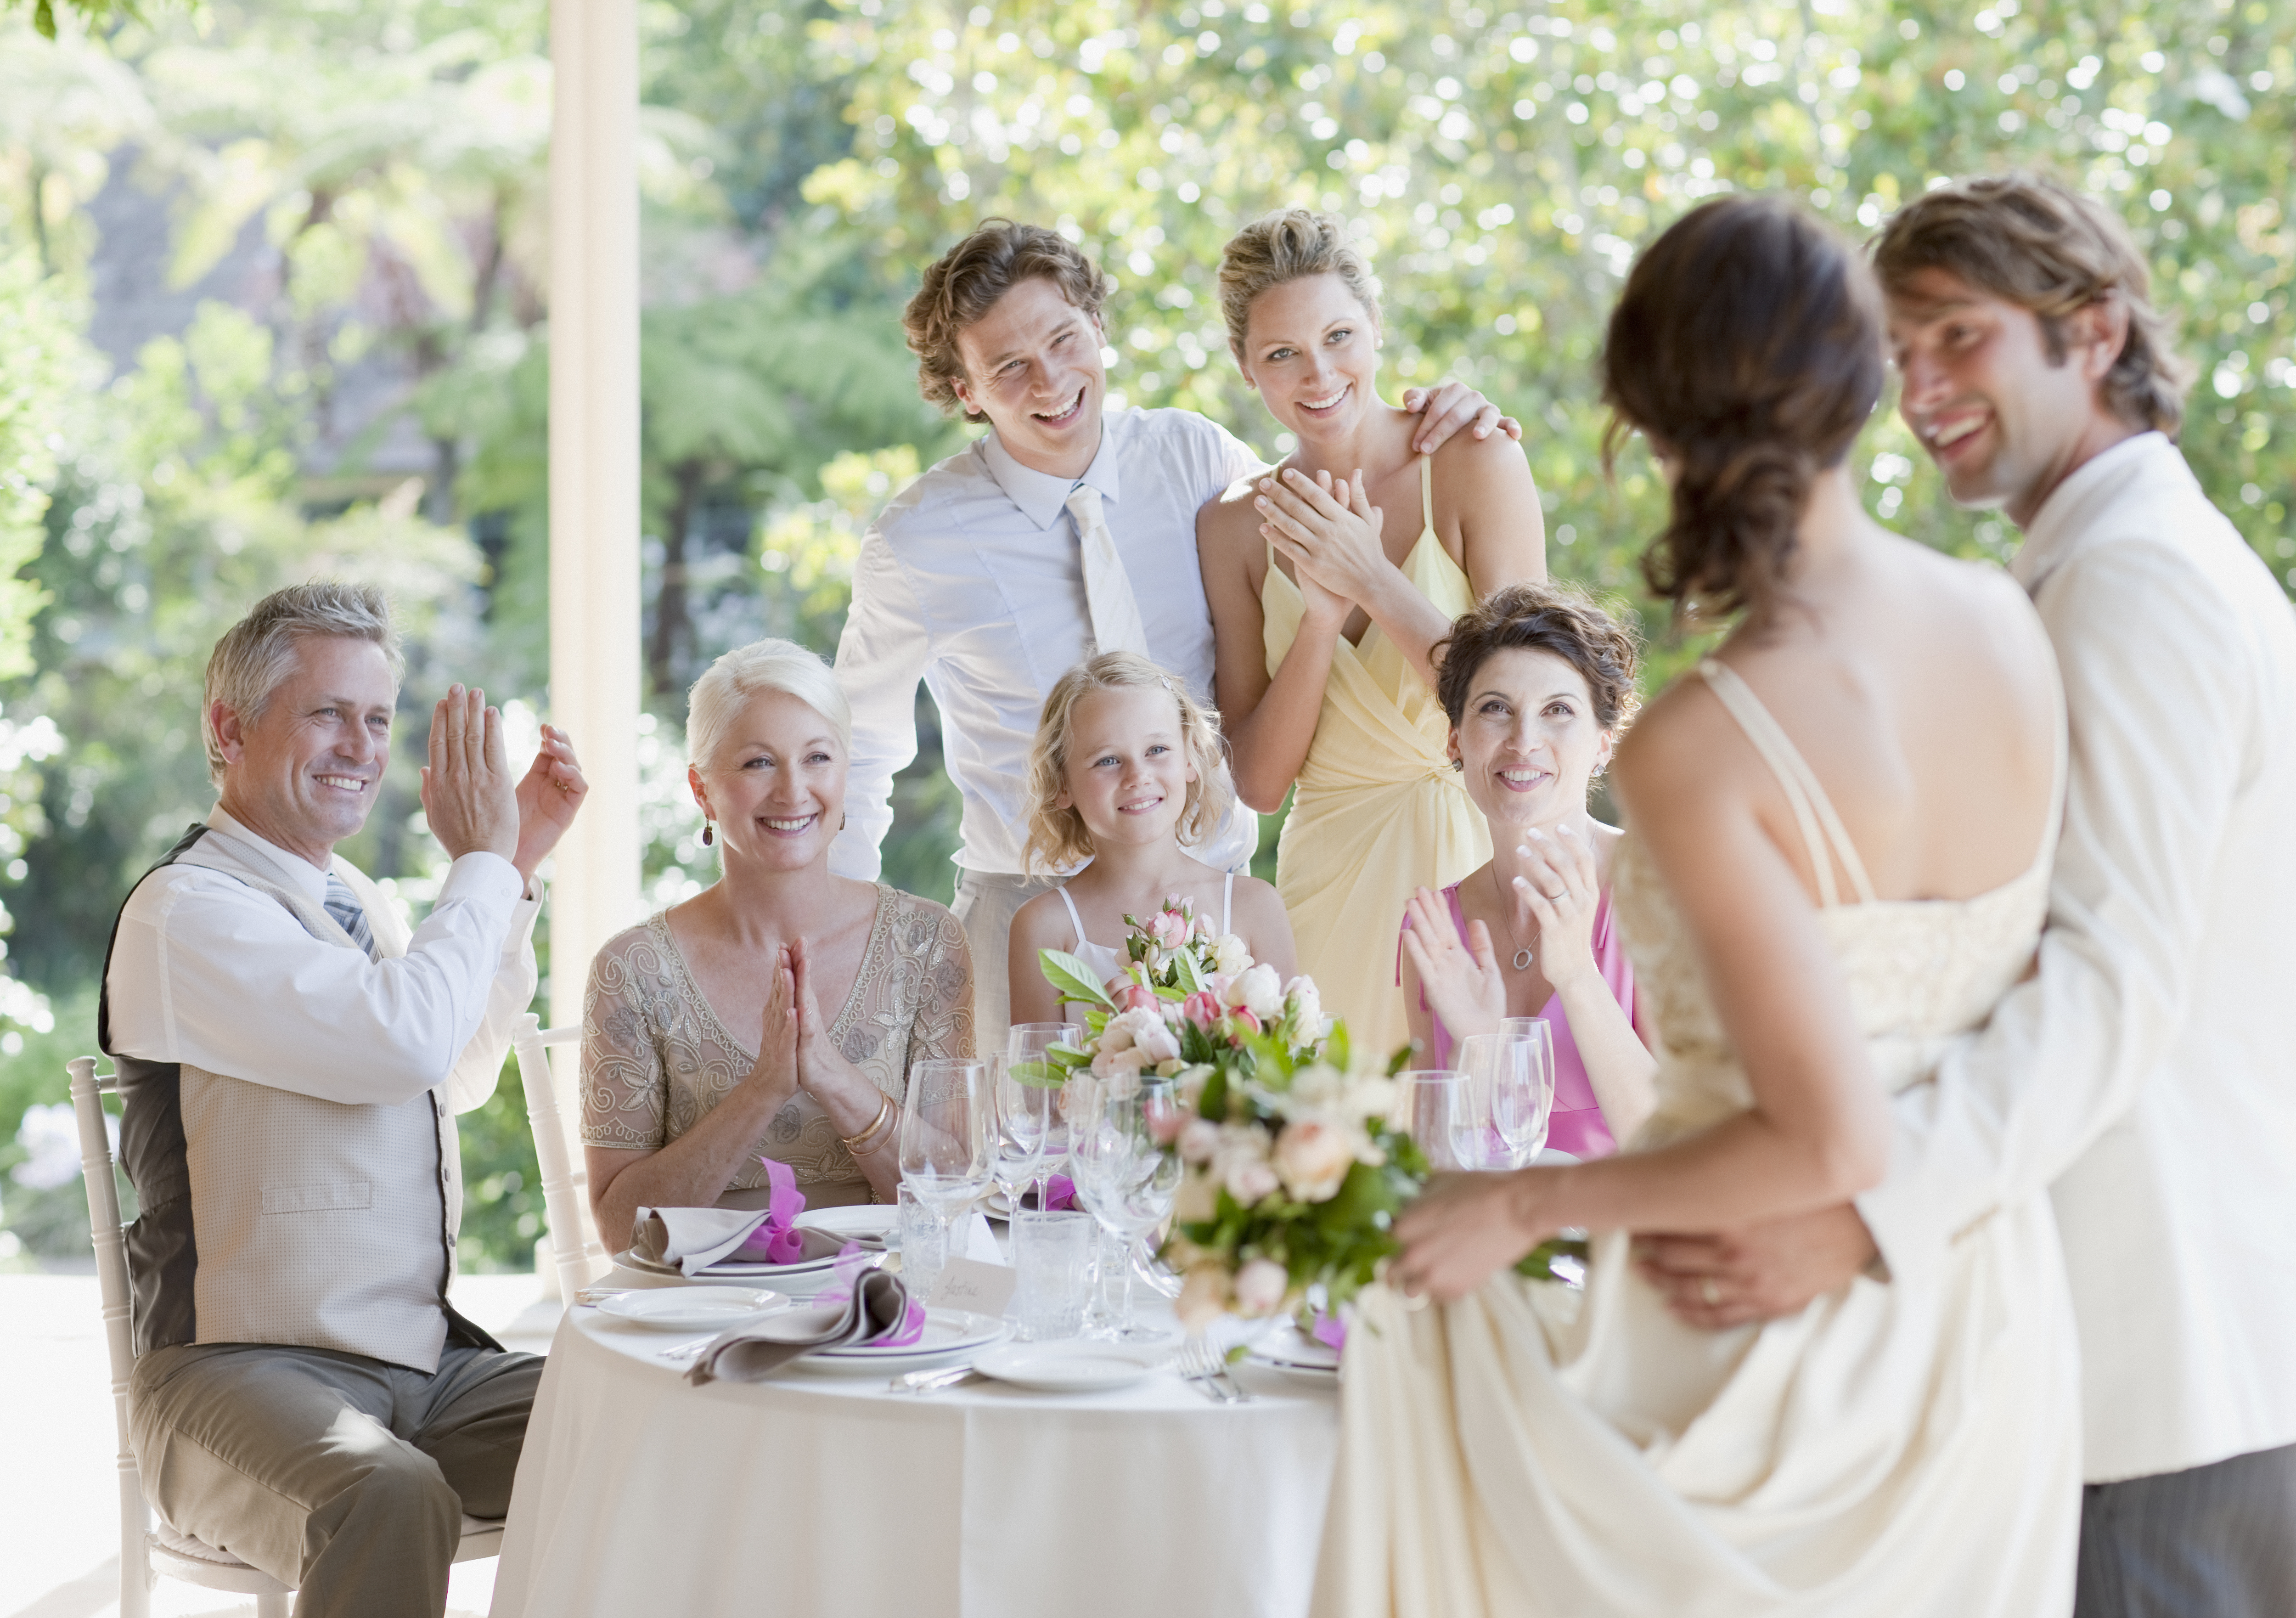 Les membres de la famille se réjouissent lors d'une réception de mariage | Source : Getty Images